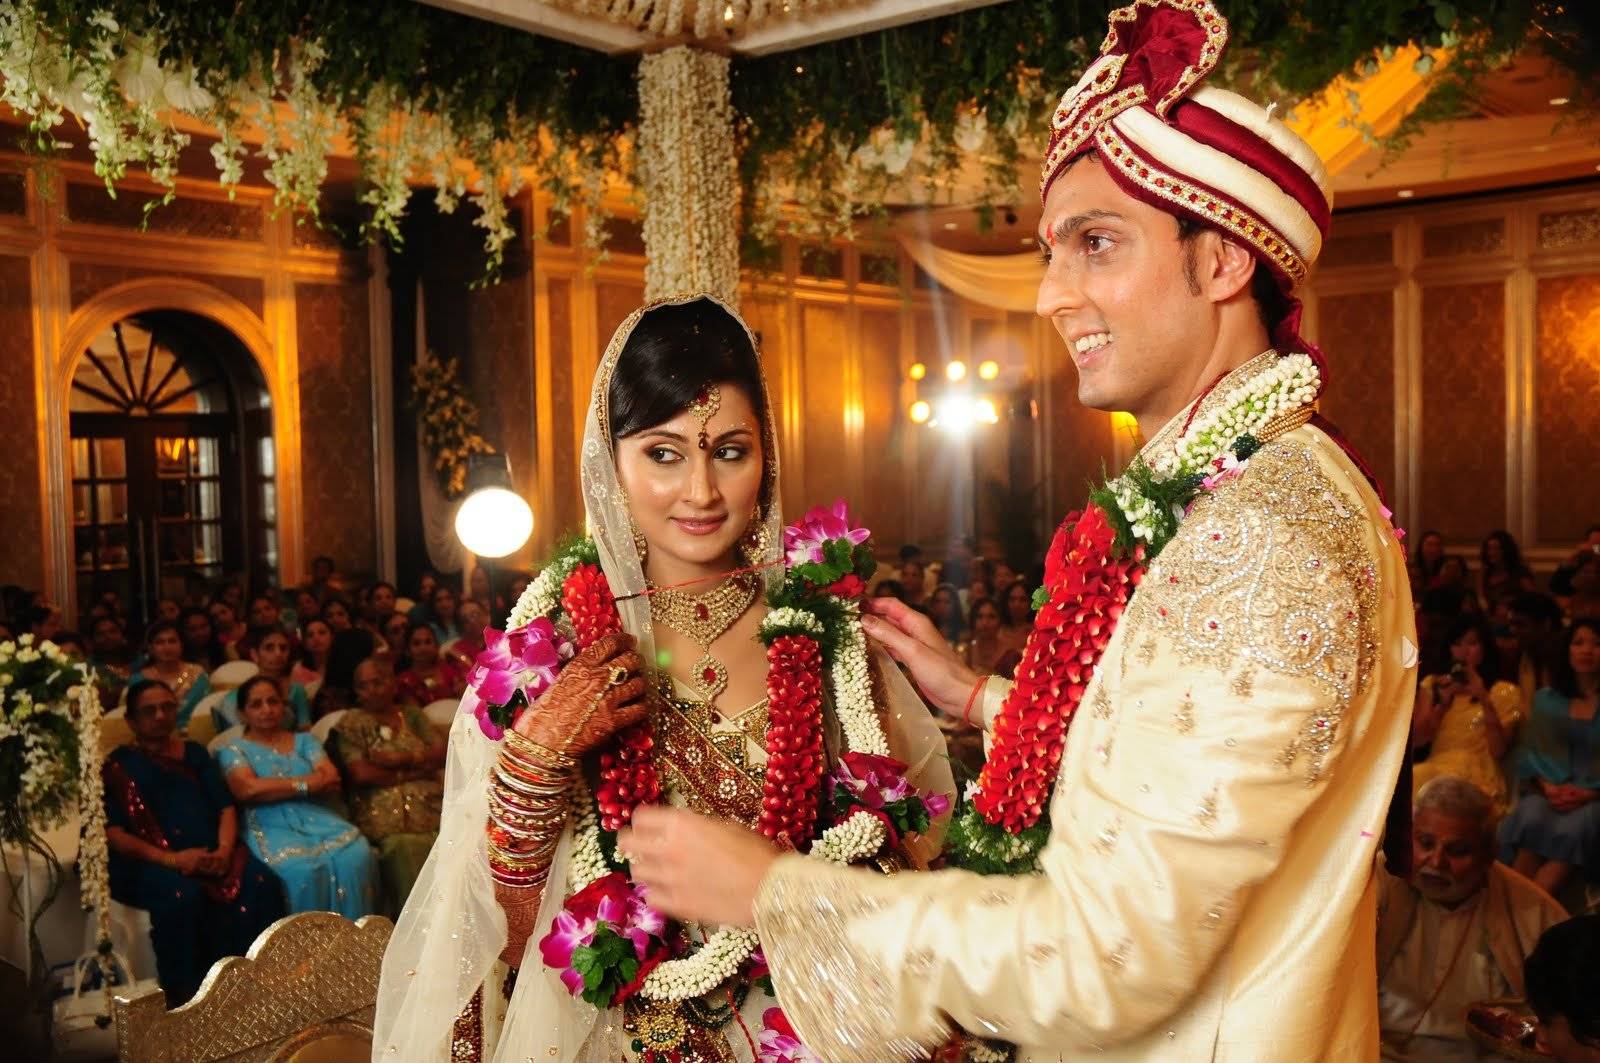 Свадебные традиции в индии - помолвка и церемония бракосочетания